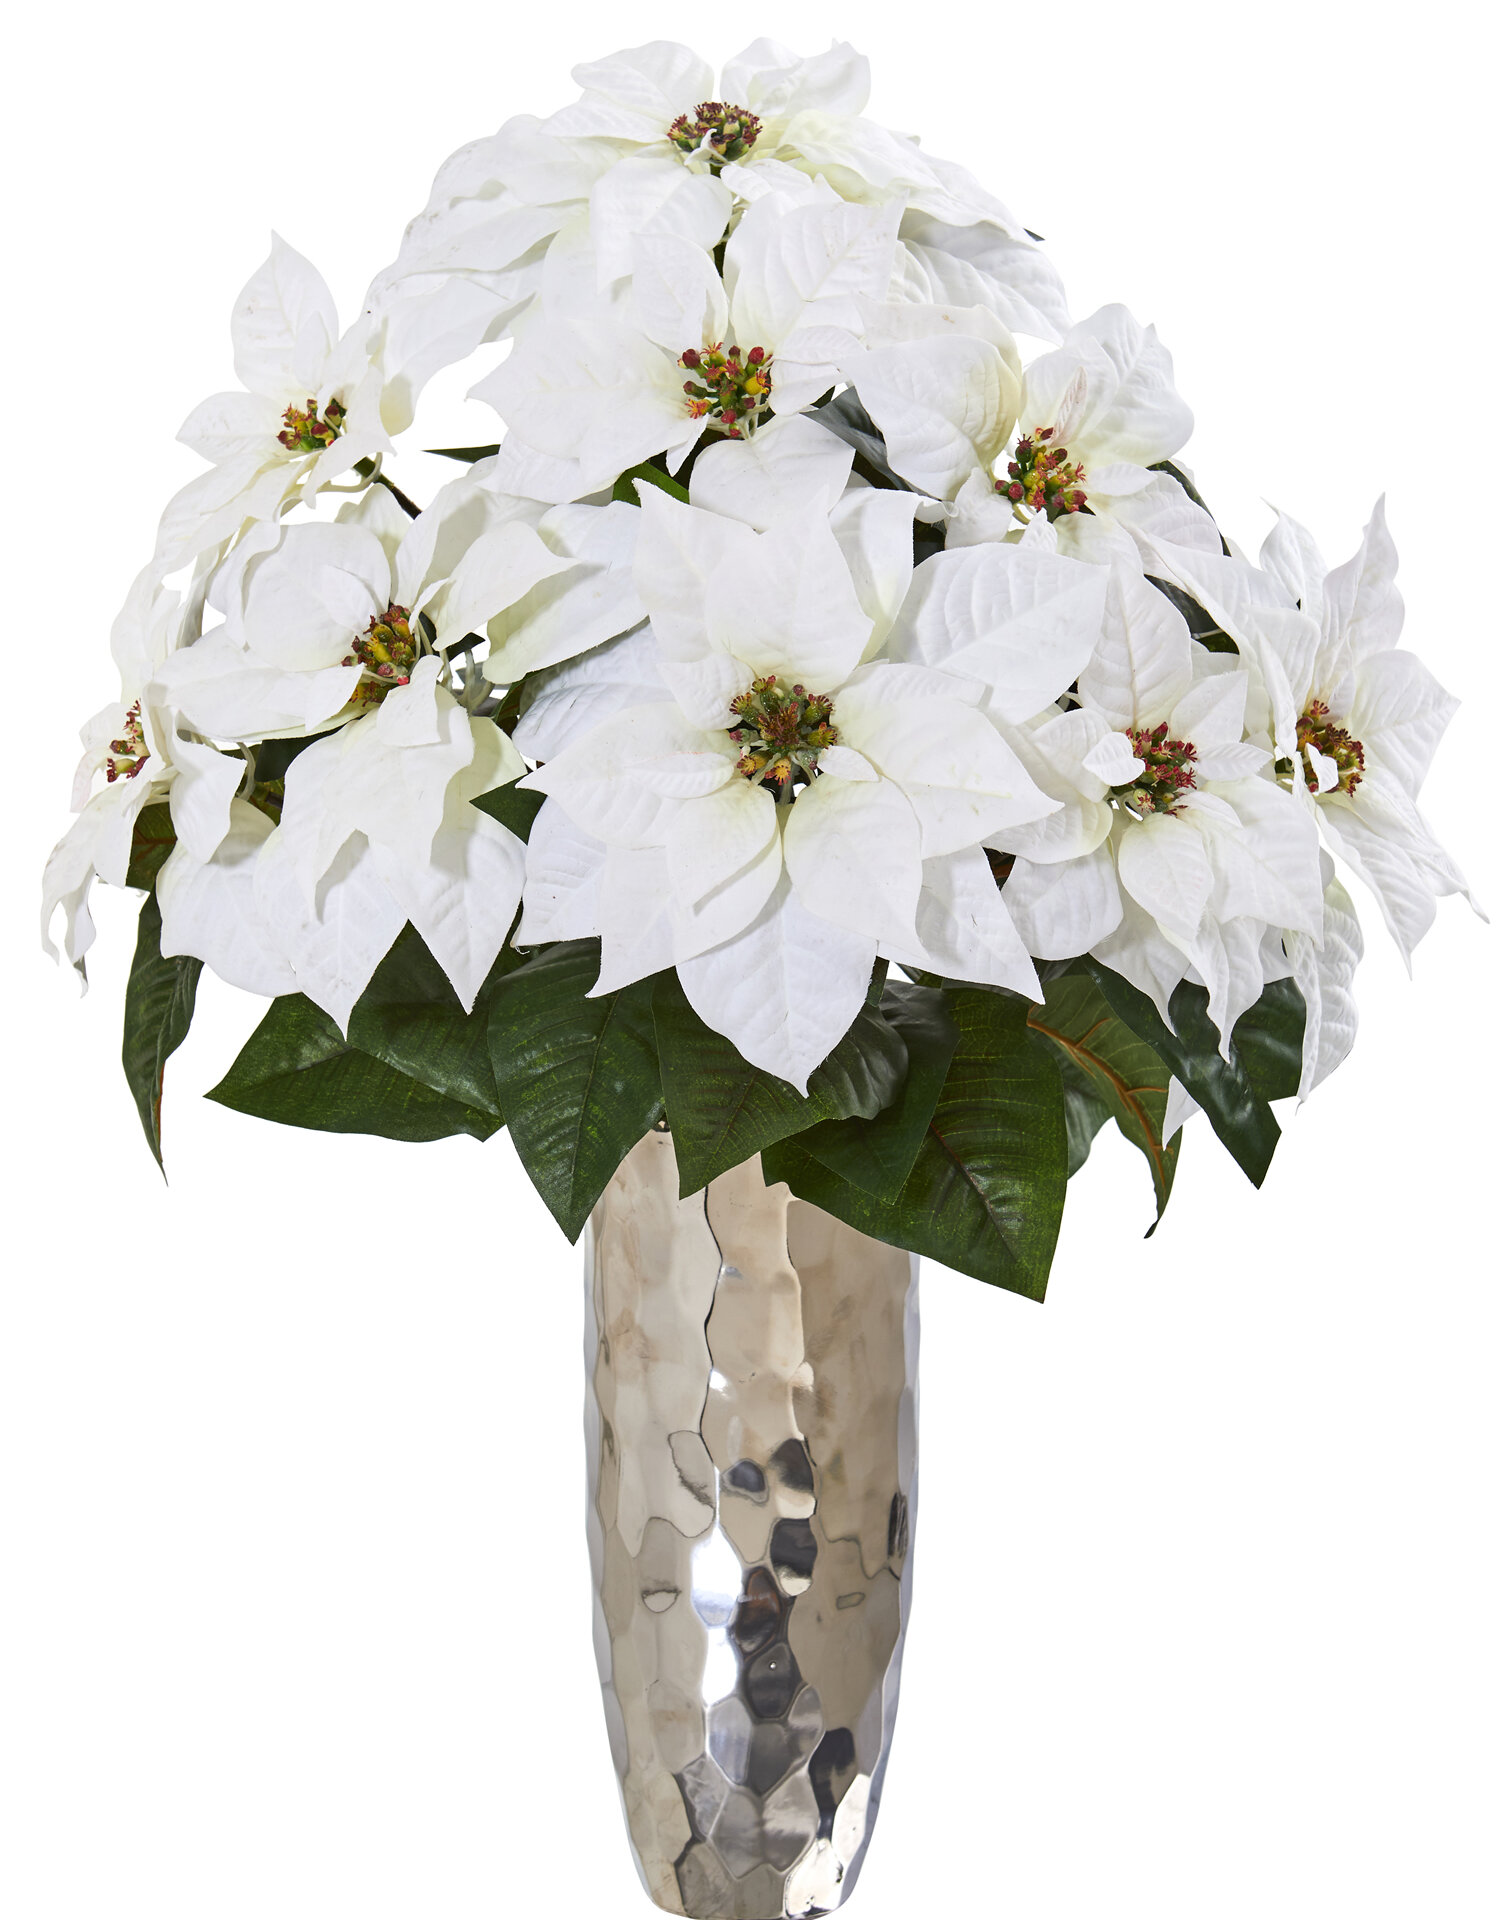 floral arrangements with poinsettias